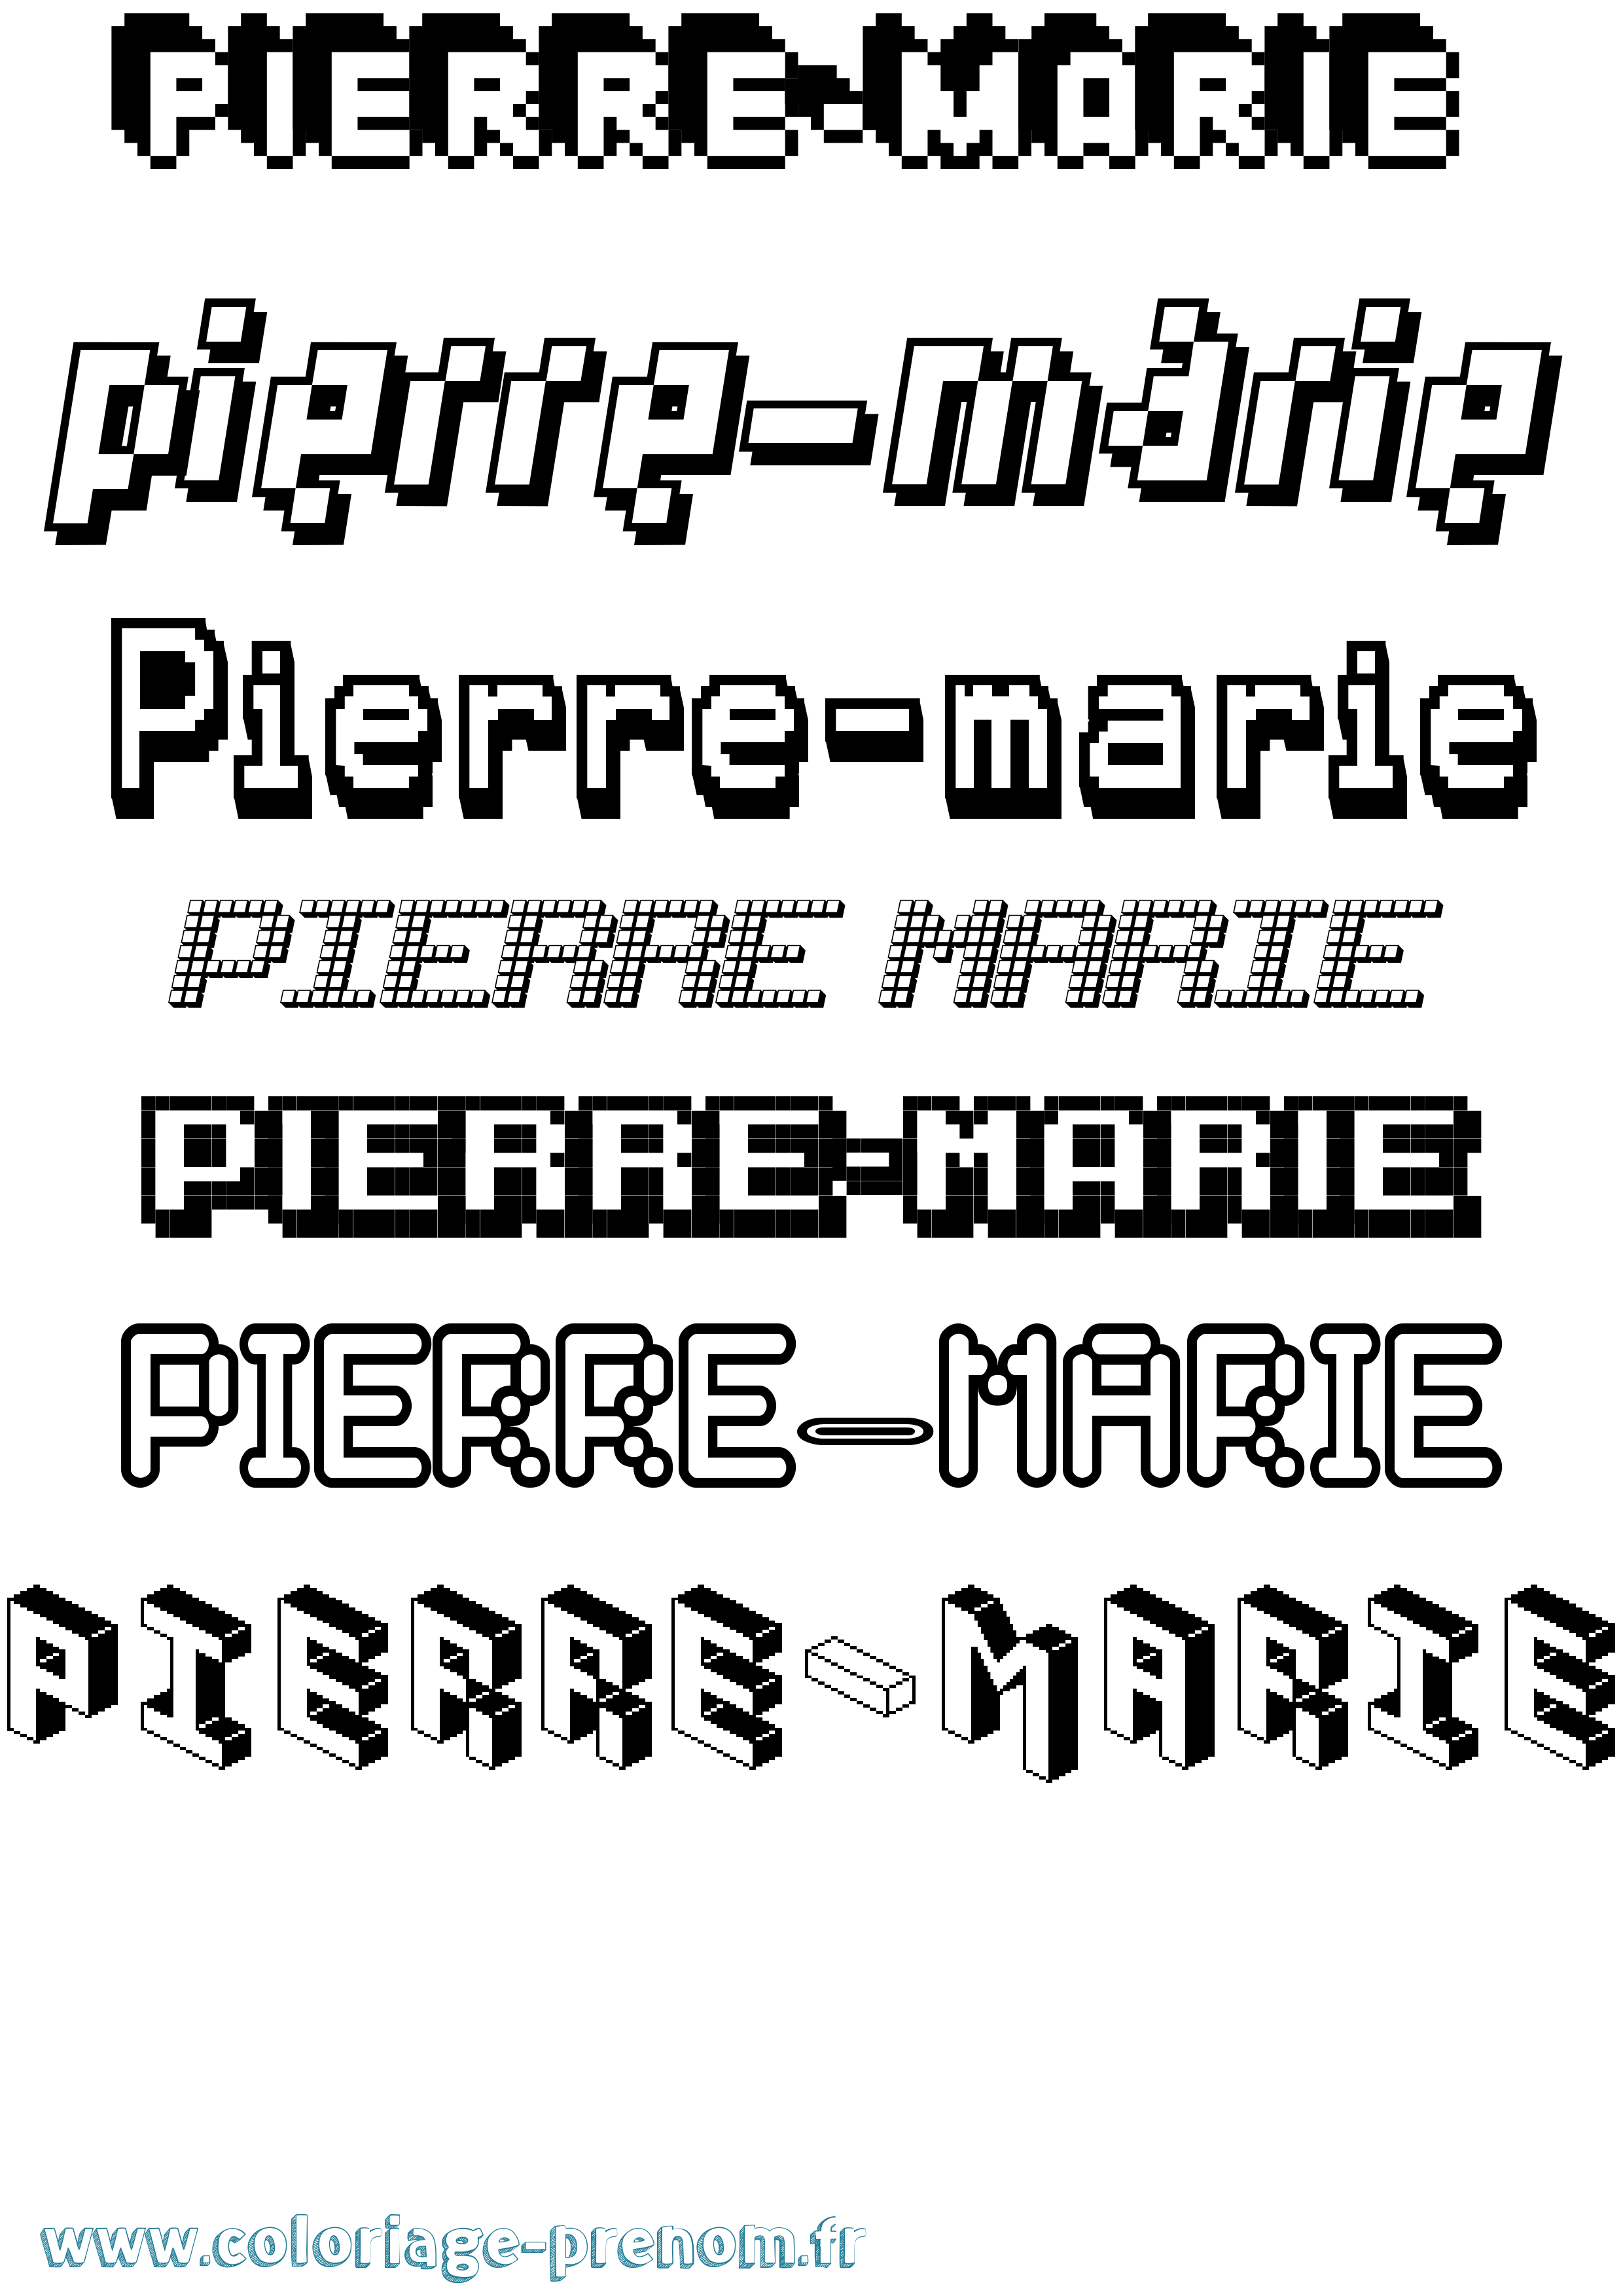 Coloriage prénom Pierre-Marie Pixel